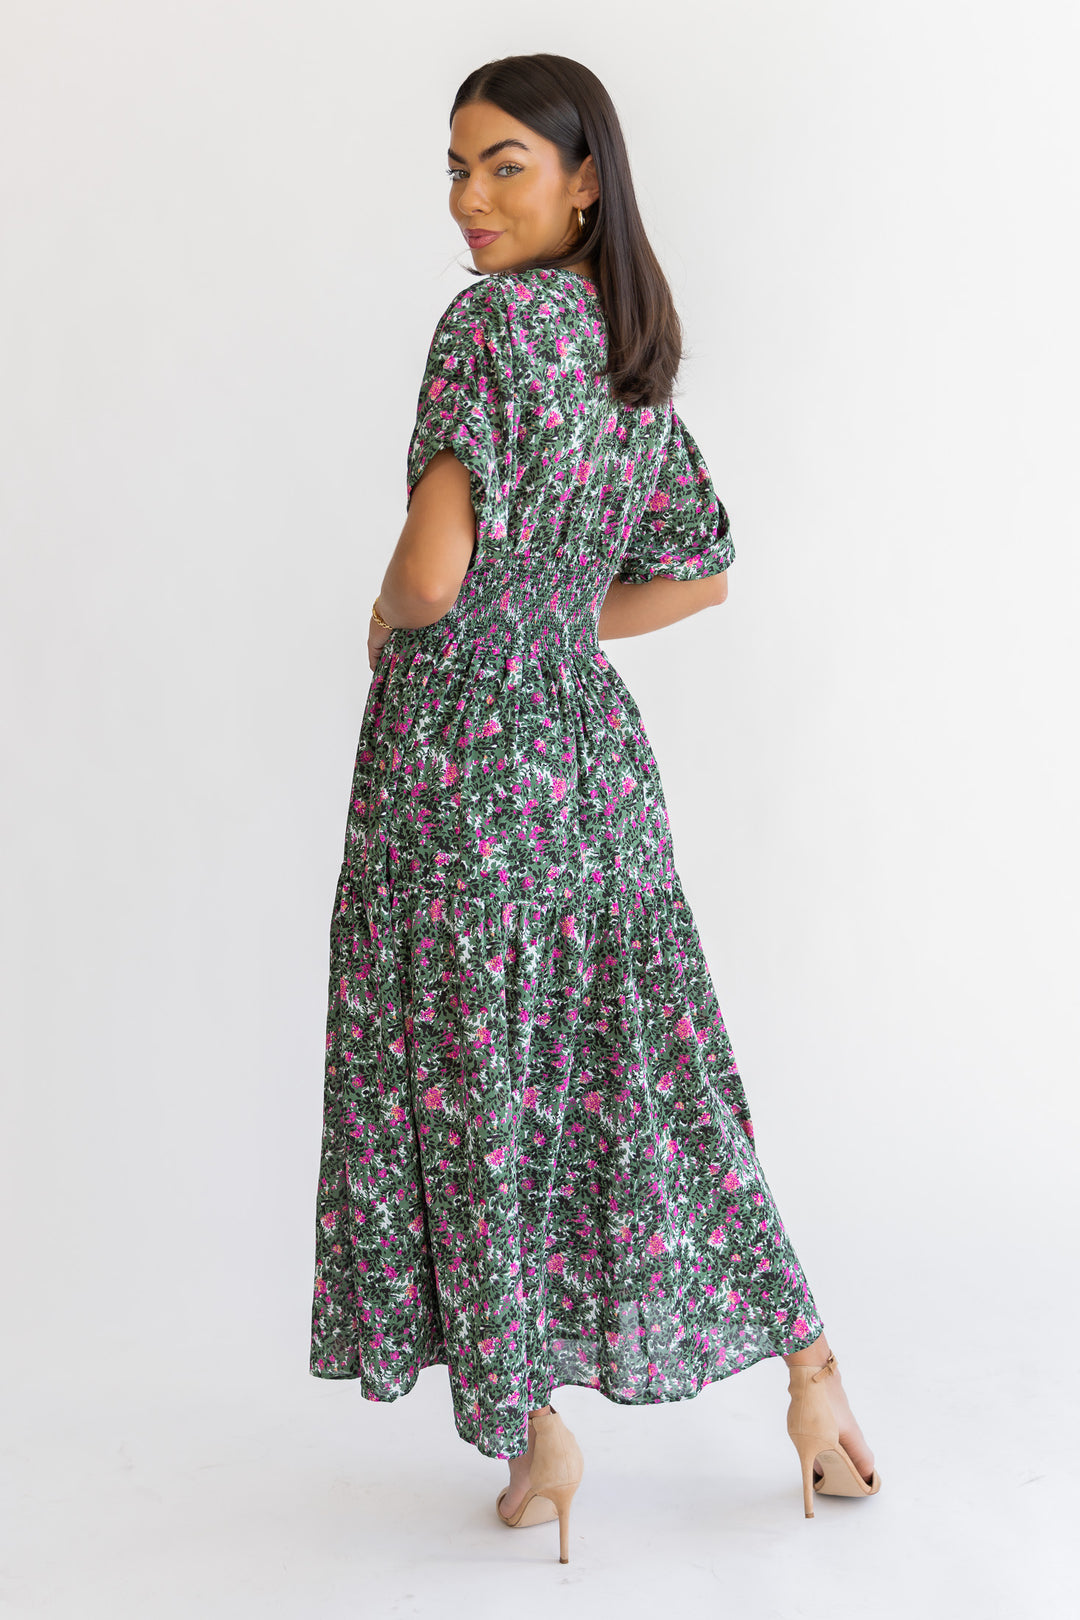 Daria Green Floral Maxi Dress